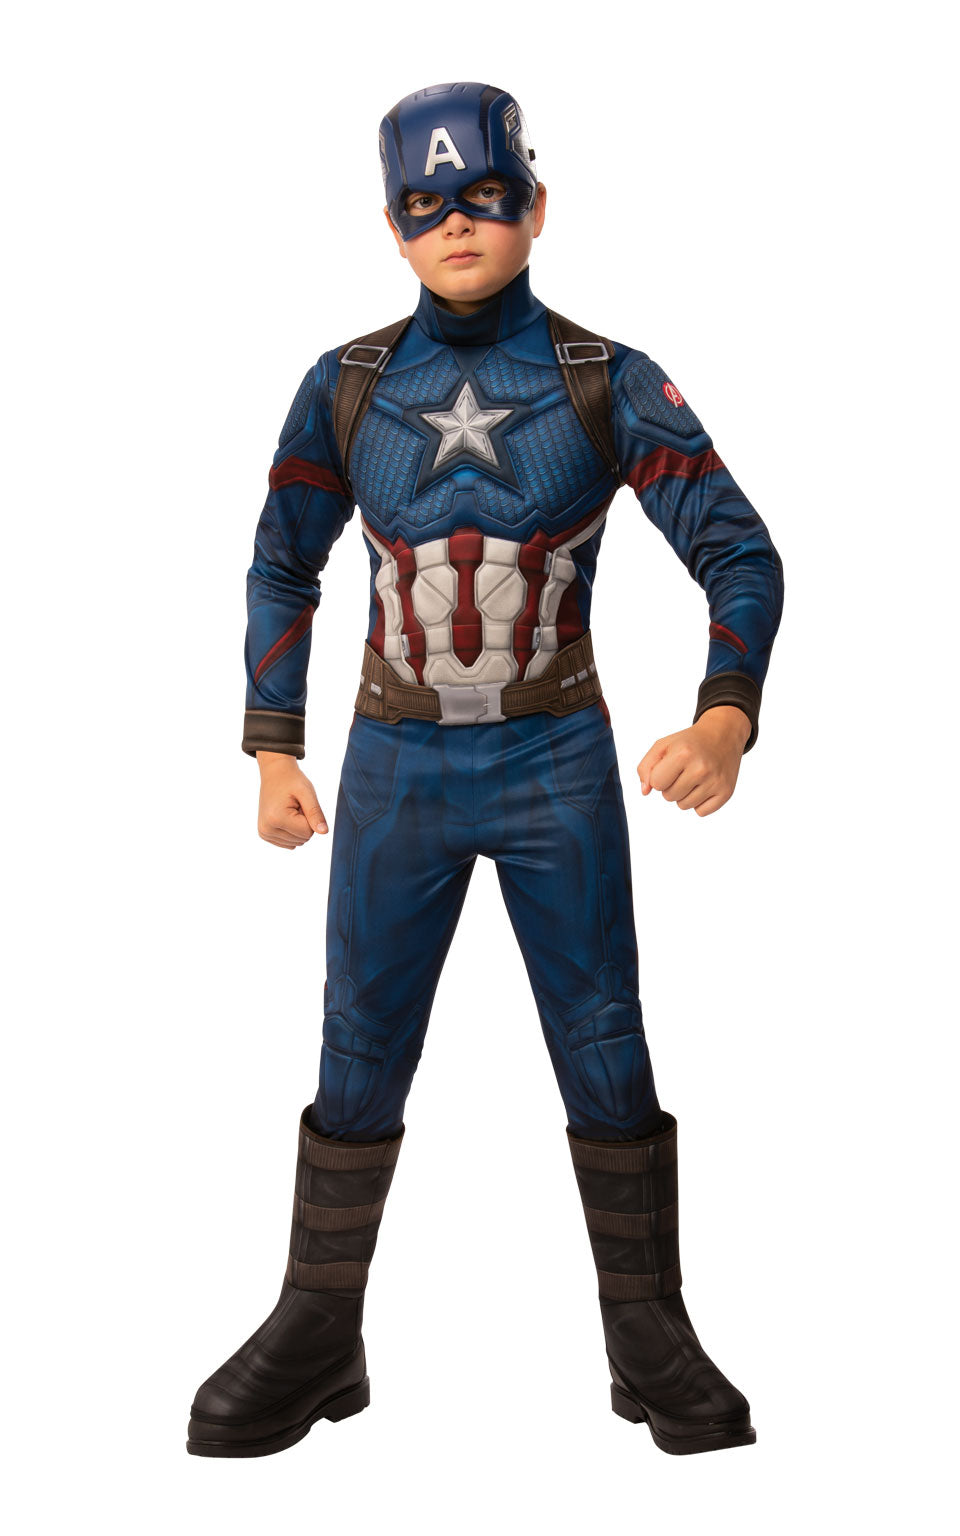 Captain America Avengers Endgame Costume for children.